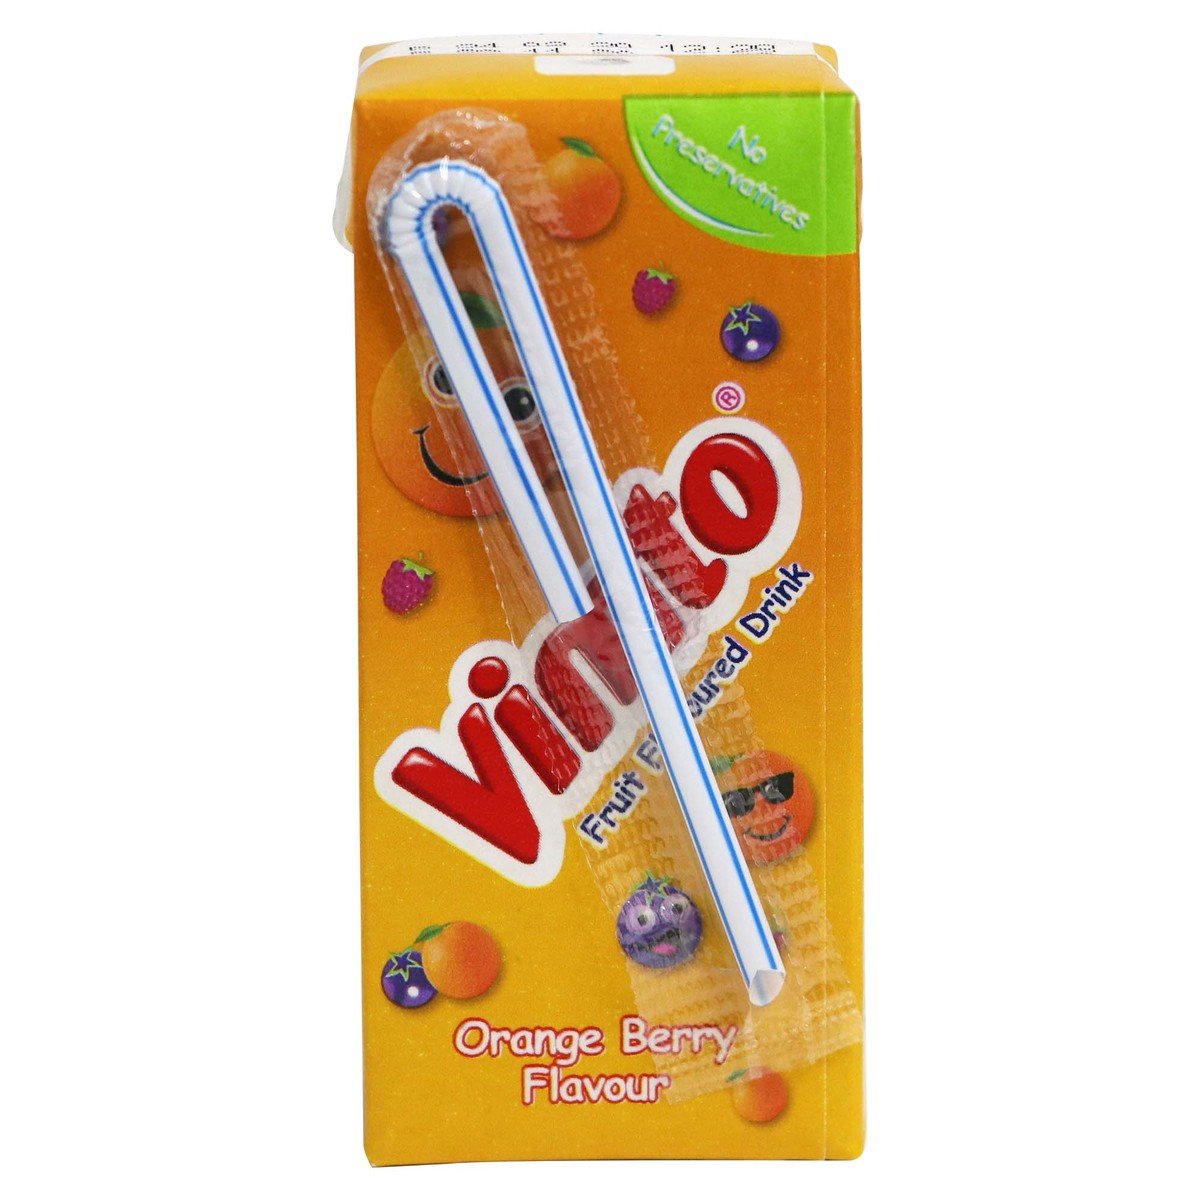 Vimto Orange & Berry Fruit Flavoured Drink 200ml